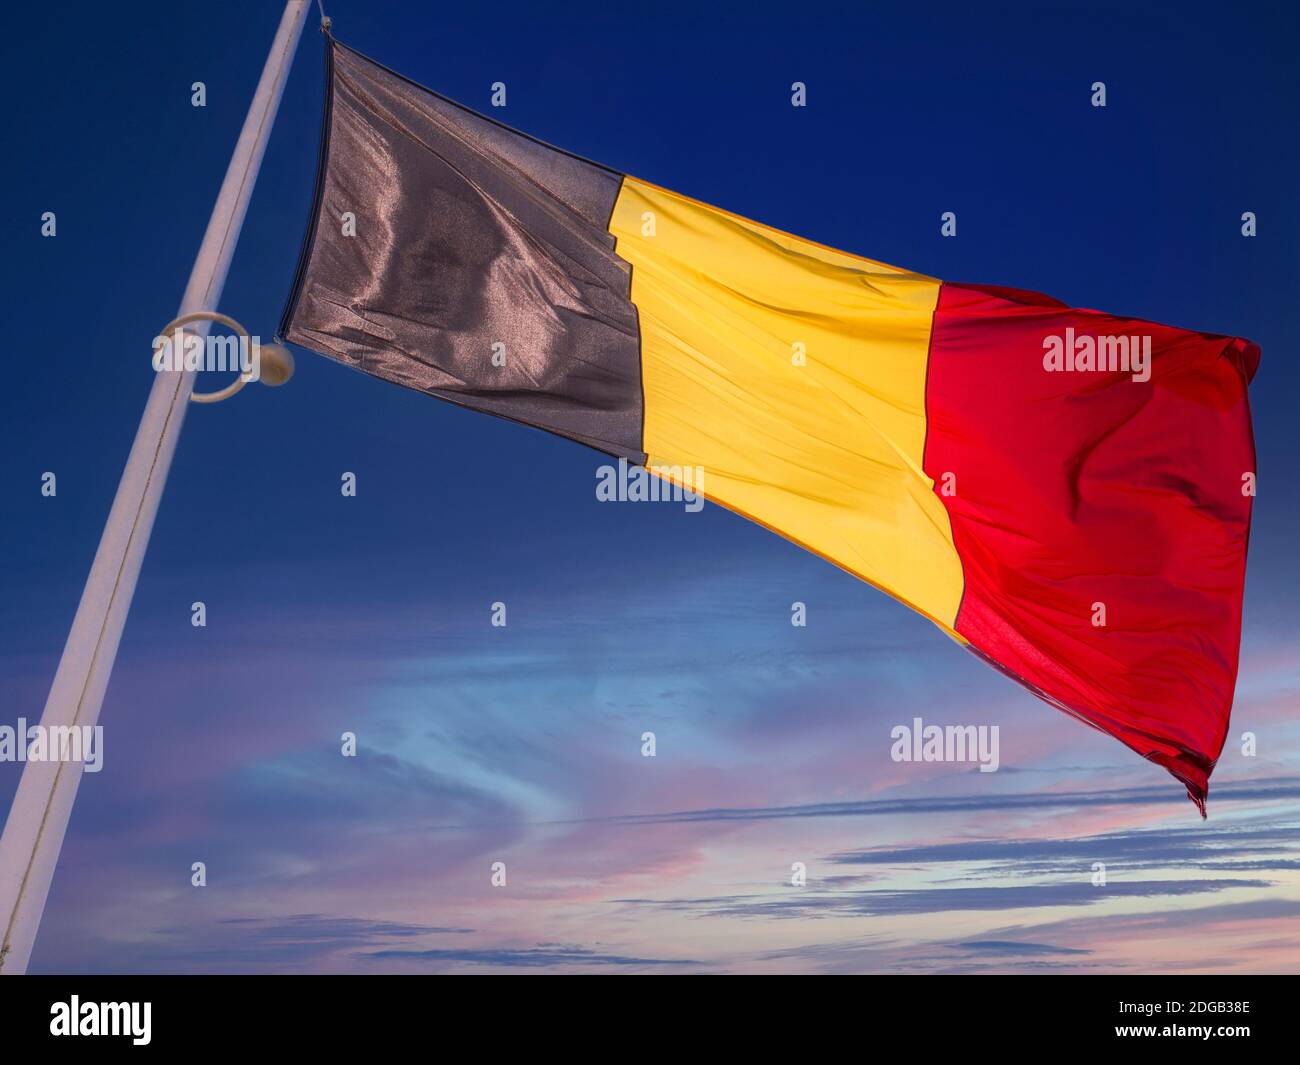 Bandiera belga al tramonto, bandiera nazionale del Belgio giallo-nero-rosso, ispirata al tricolore francese, è stata adottata nel 1831, poco dopo aver ottenuto l'indipendenza dai Paesi Bassi. Foto Stock